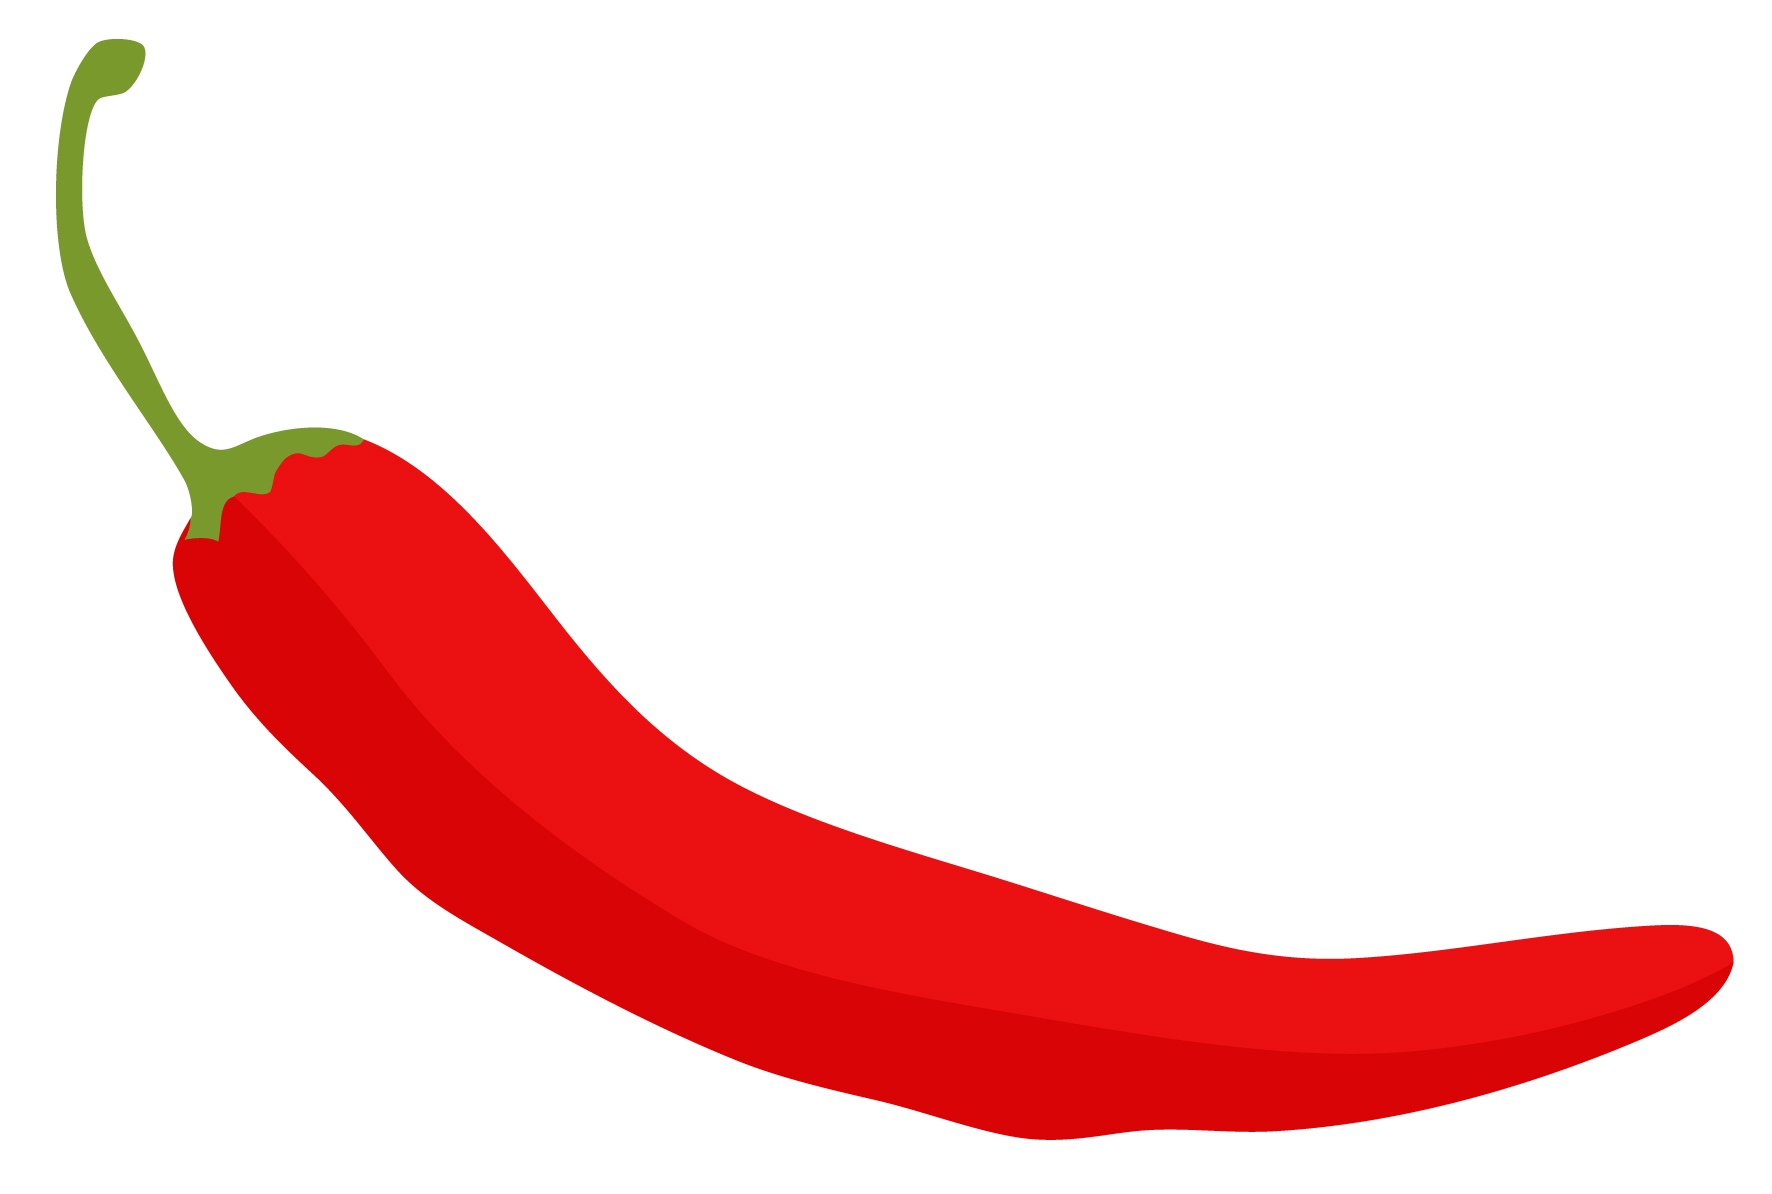 Chili Pepper Border - Chili Pepper Clip Art